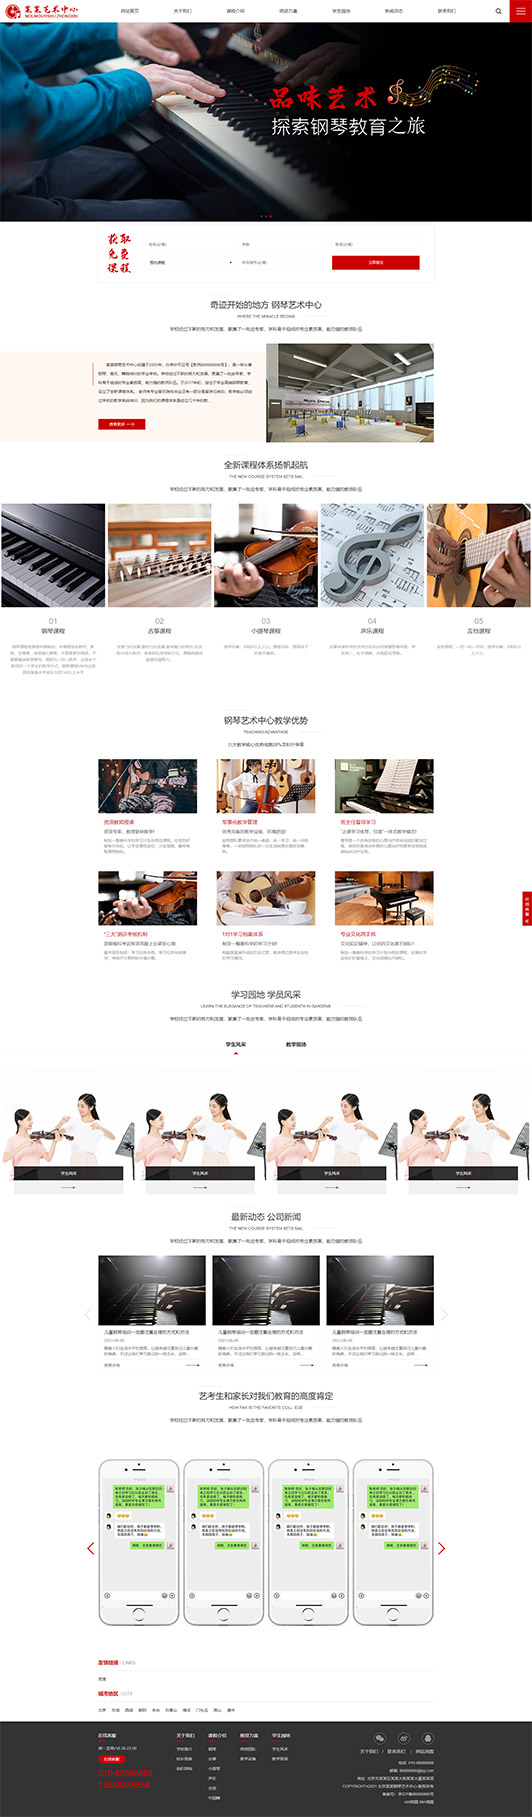 益阳钢琴艺术培训公司响应式企业网站